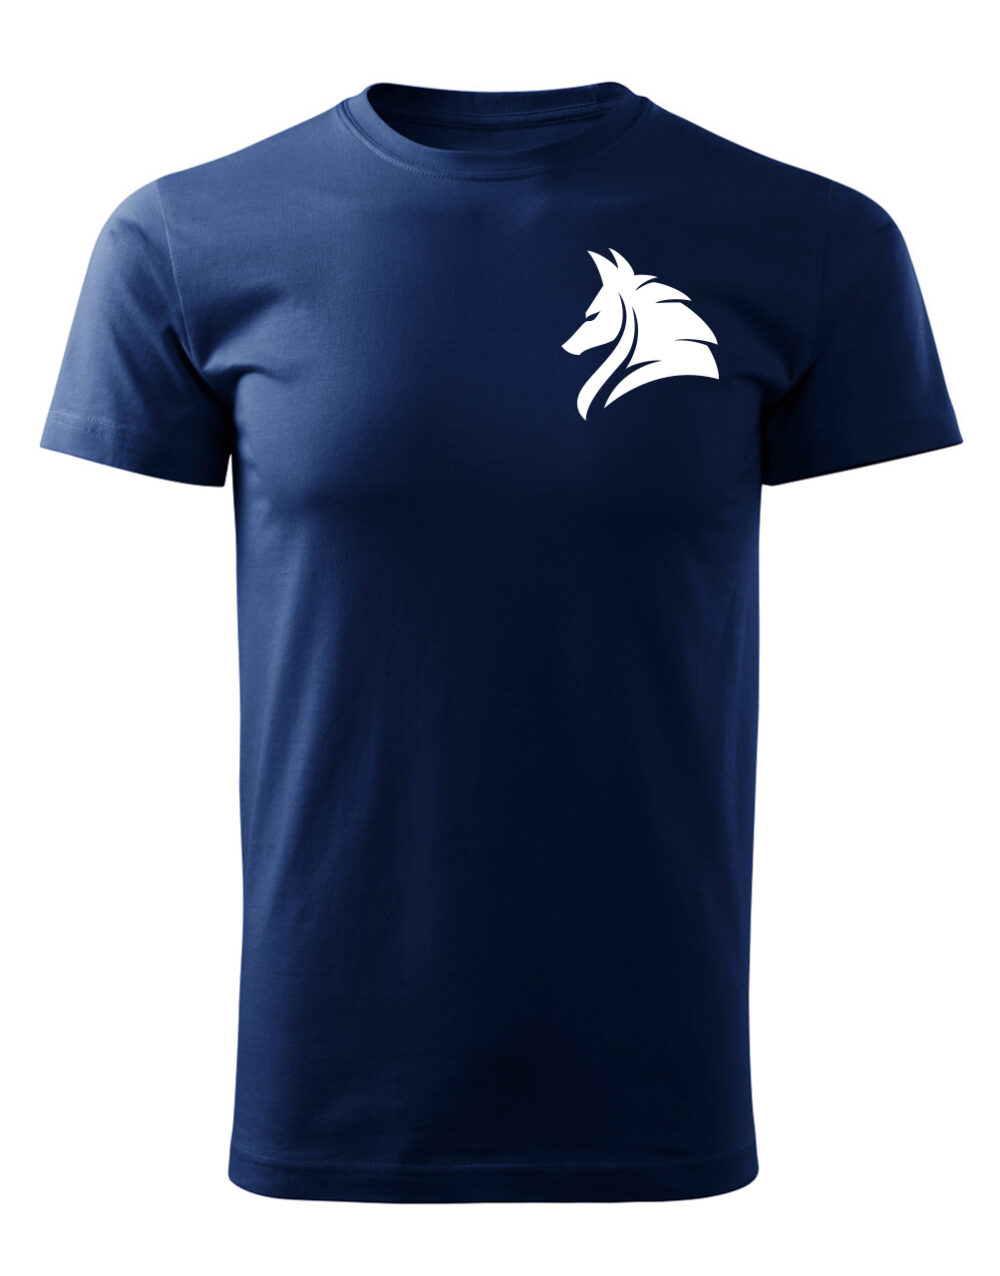 Pánské tričko s potiskem Vlk námořní modrá